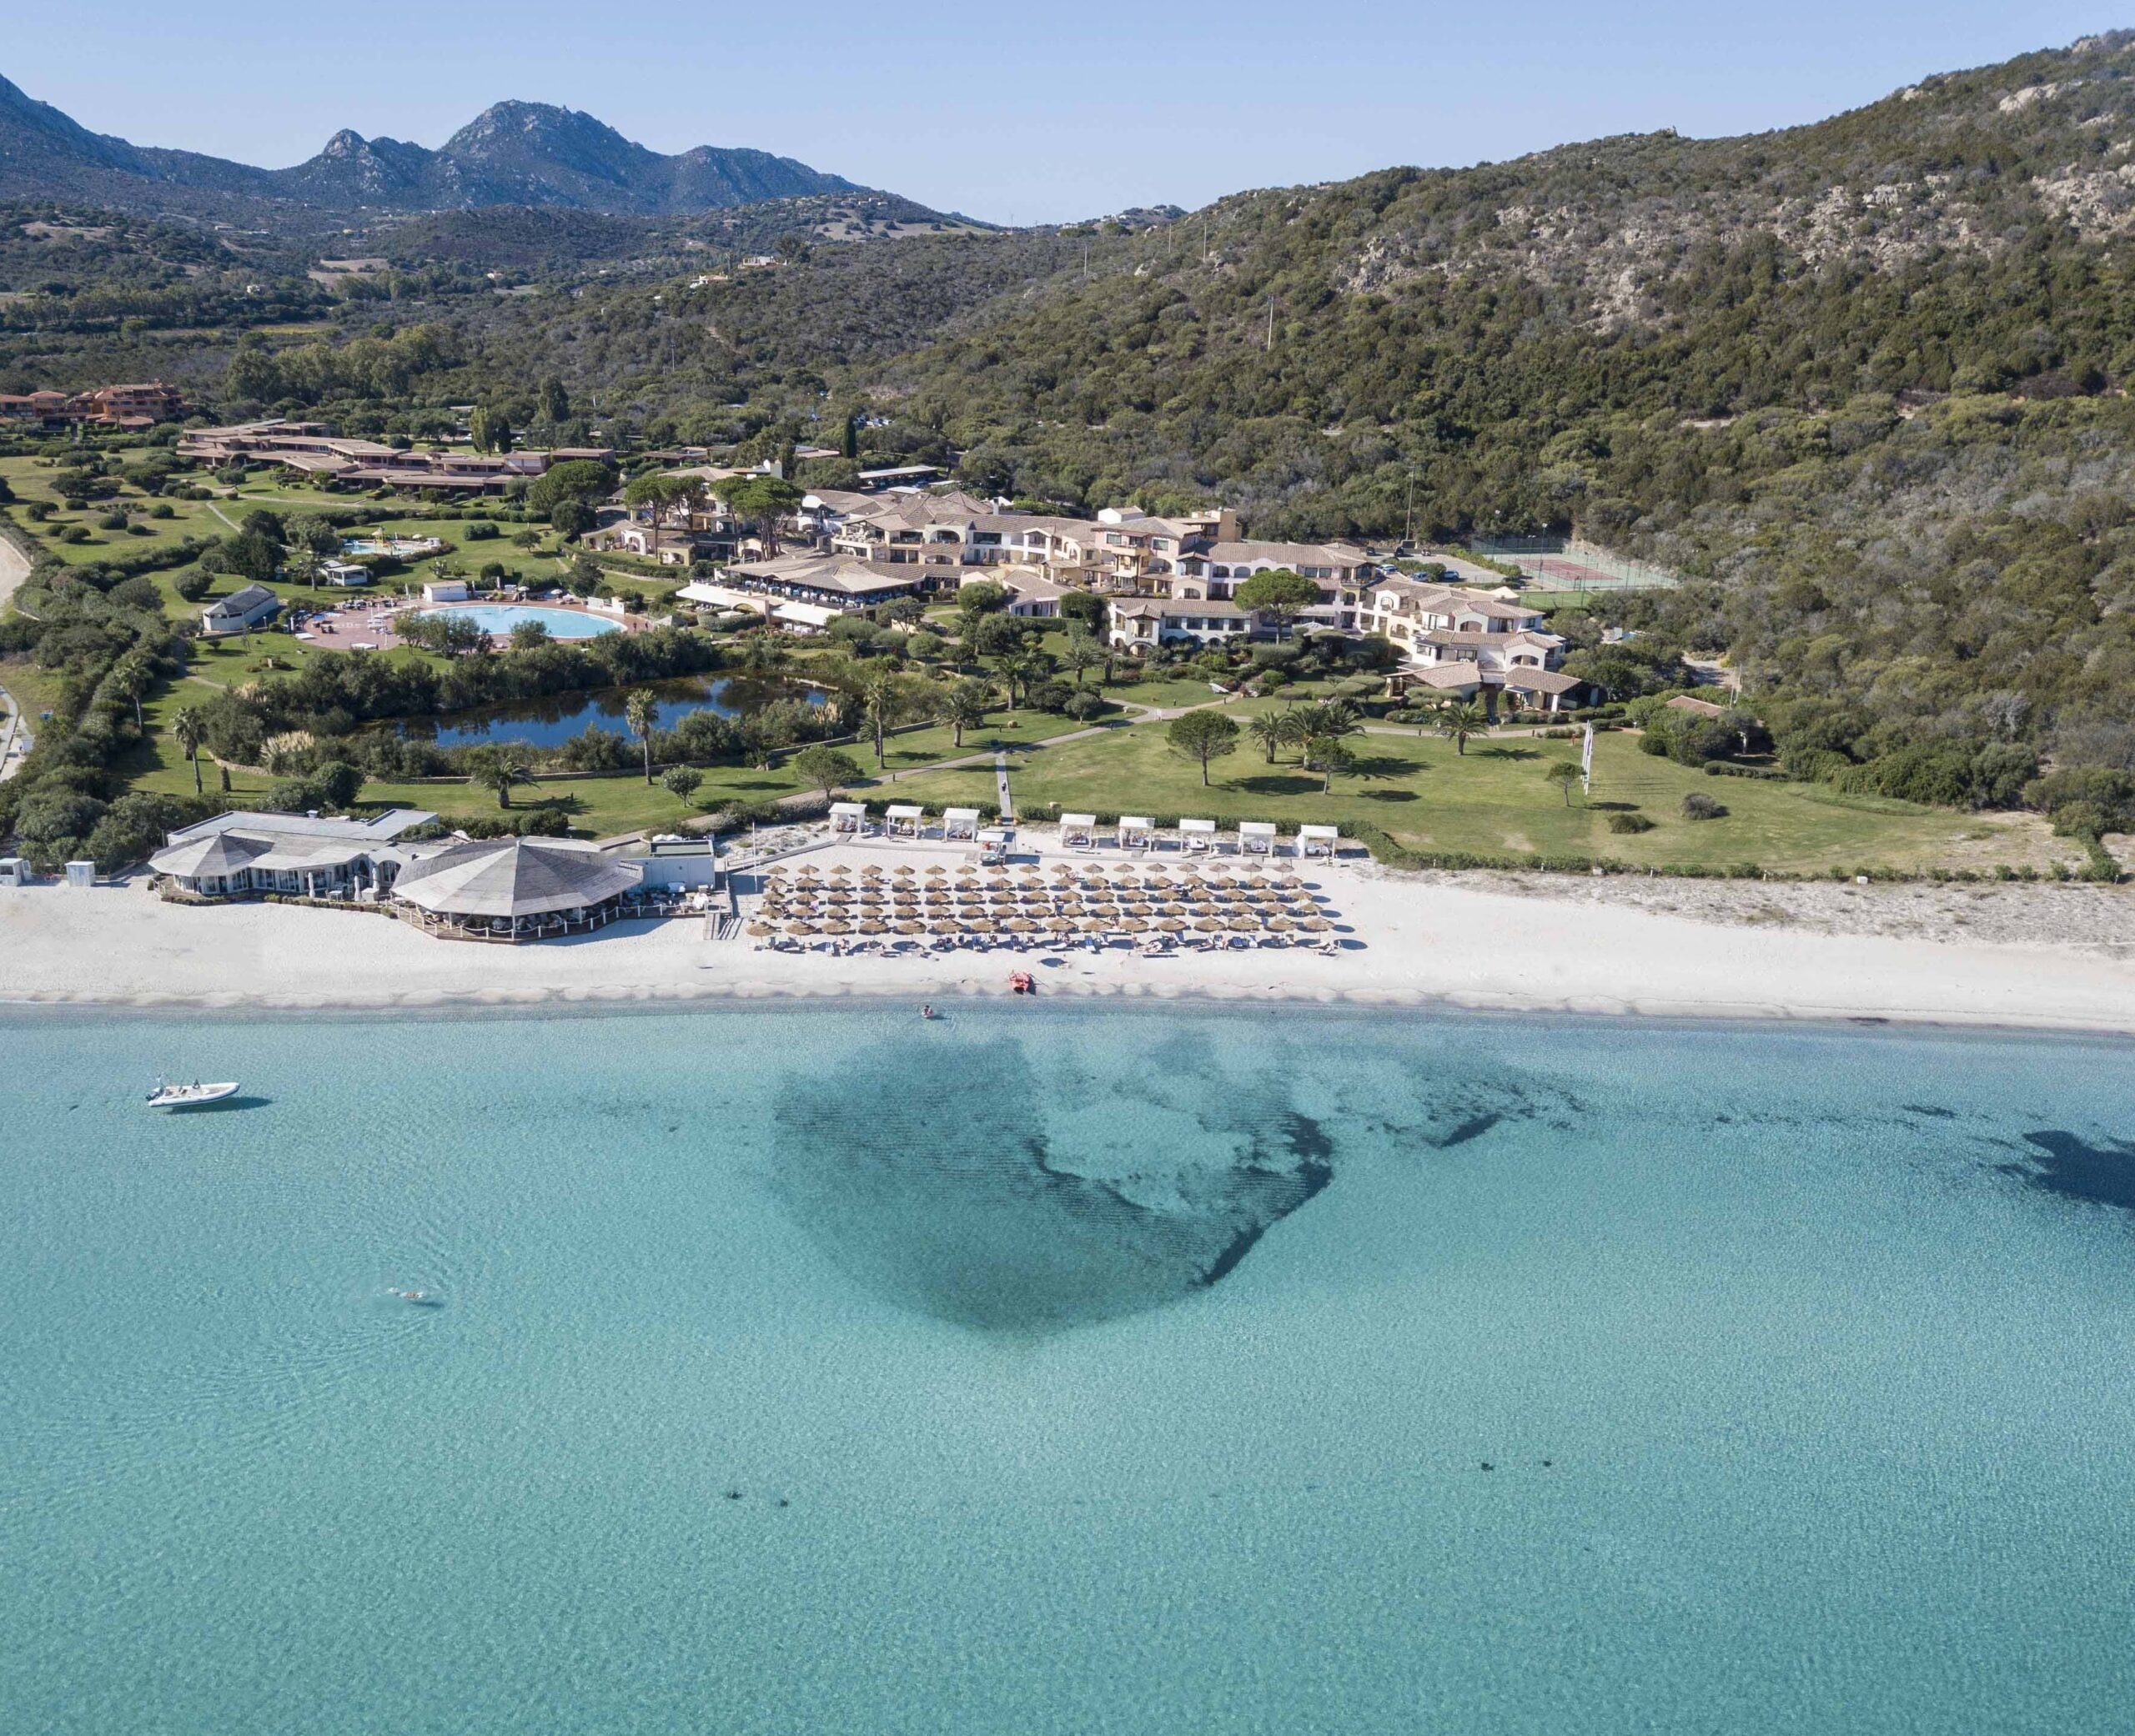 Hotel Abi D'Oru, Porto Rotondo, Sardegna, Riapertura per nuova stagione, articolo su Beyond the Magazine